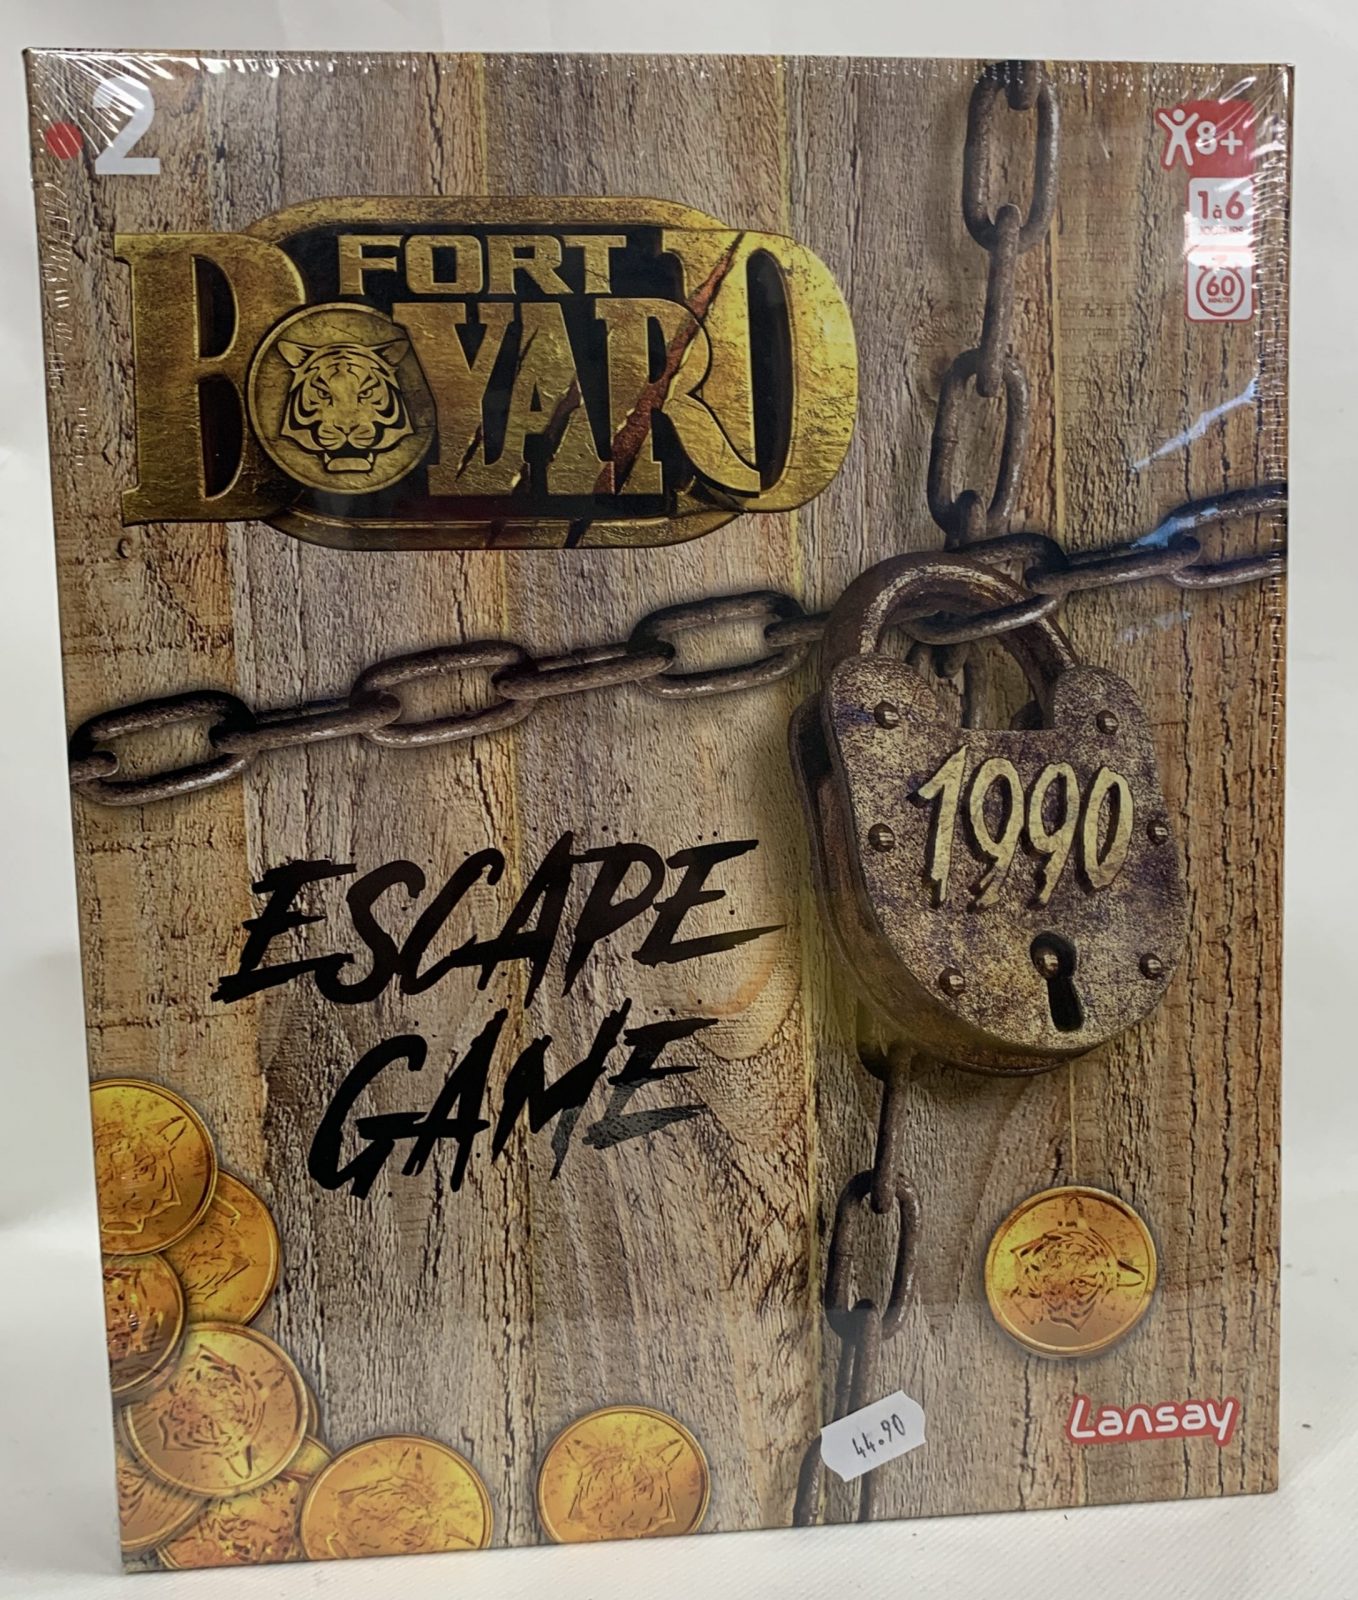 Fort Boyard Escape game